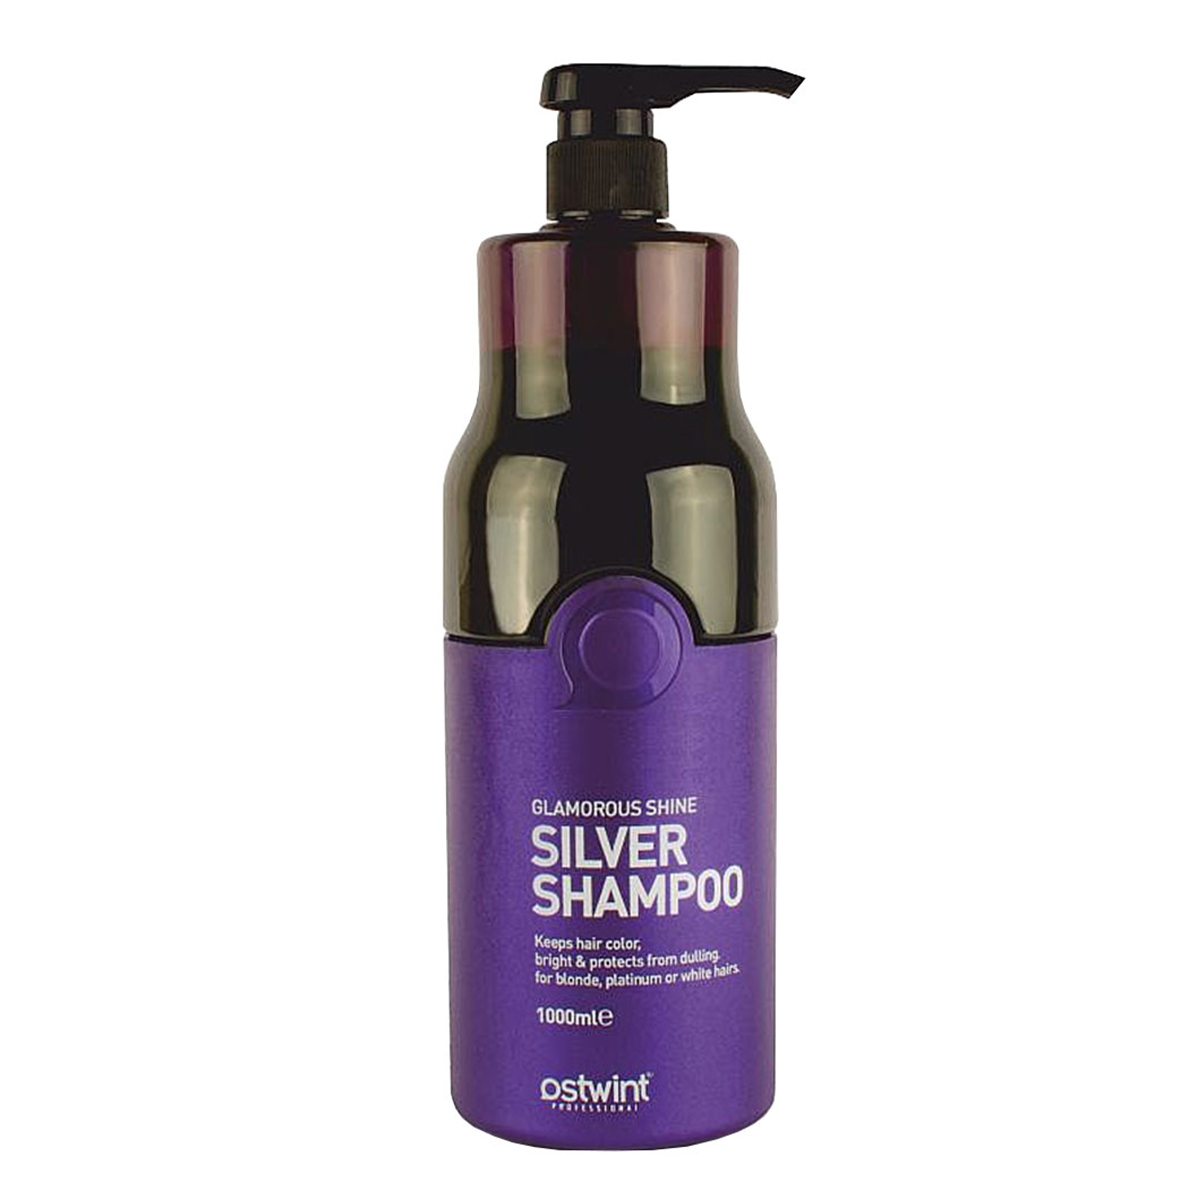 شامپو سیلور ضد زردی~Glamorous Shine Silver Shampoo~OSTWINT